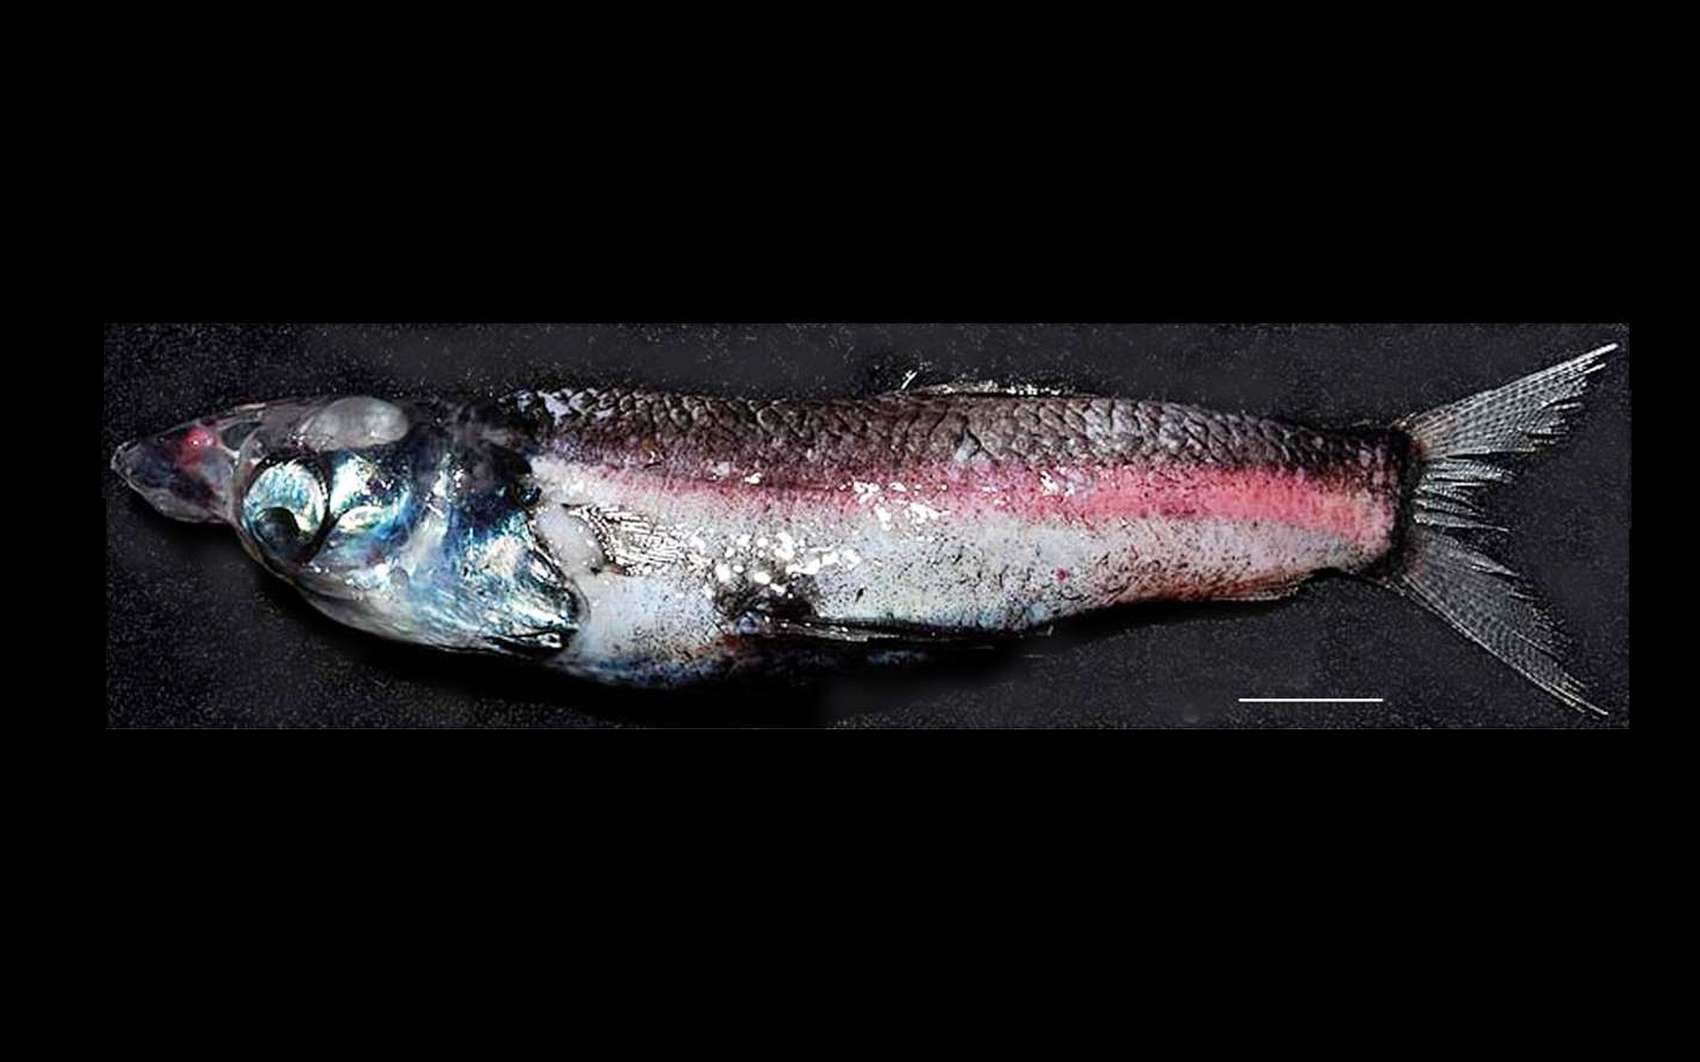 Rhynchohyalus natalensis, le poisson capturé dans la mer de Tasman, mesure 18 cm de long. La barre d'échelle vaut 2 cm. © Partridge et al., Proceedings of the Royal Society B, cc by 3.0